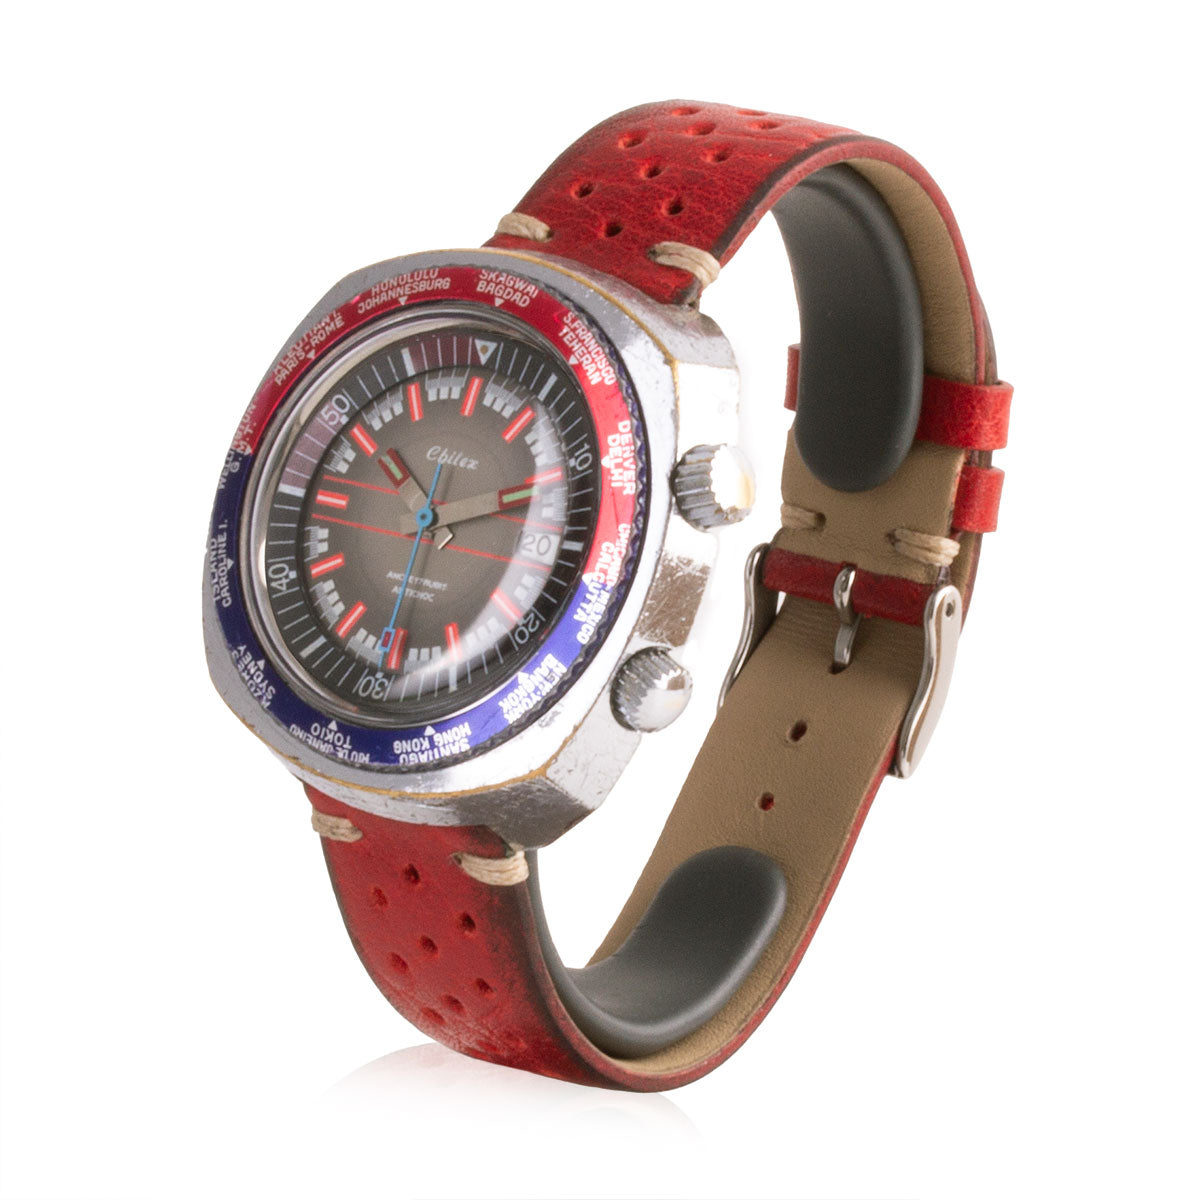 Second-hand watch - Chilex - 950€